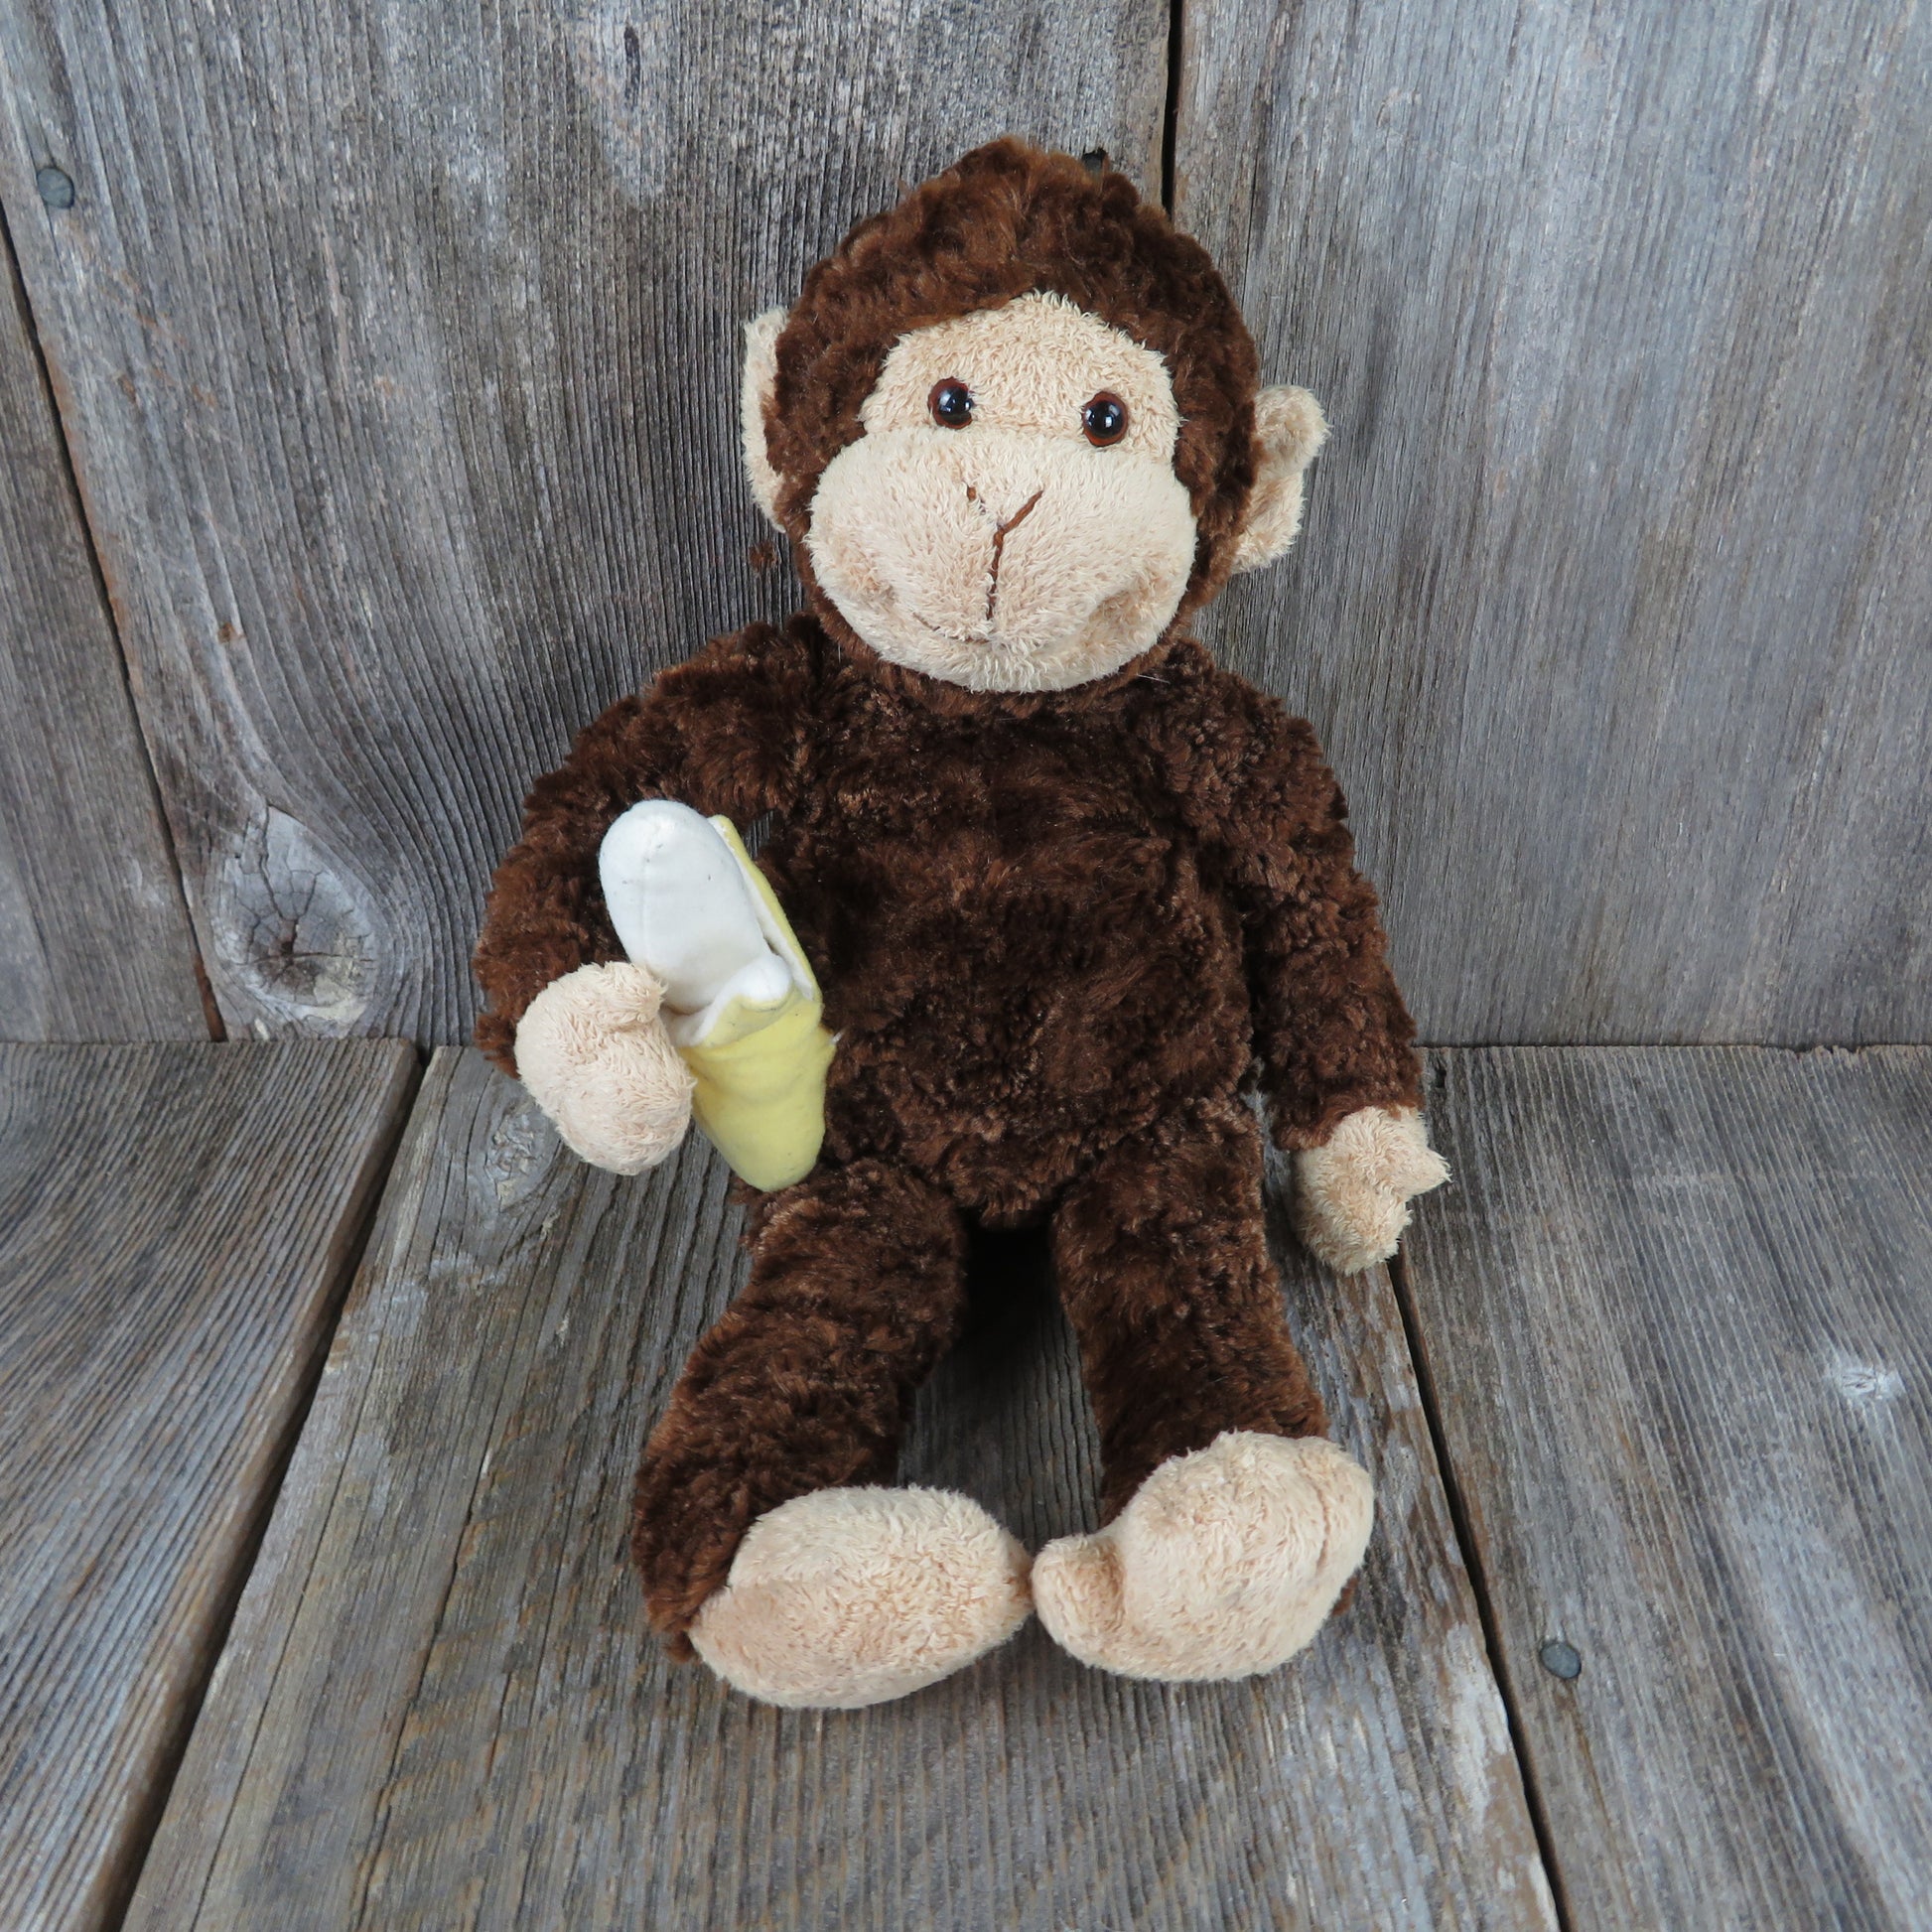 Monkey with Banana Plush Mambo Gund Chimpanzee Stuffed Animal Brown Yellow - At Grandma's Table